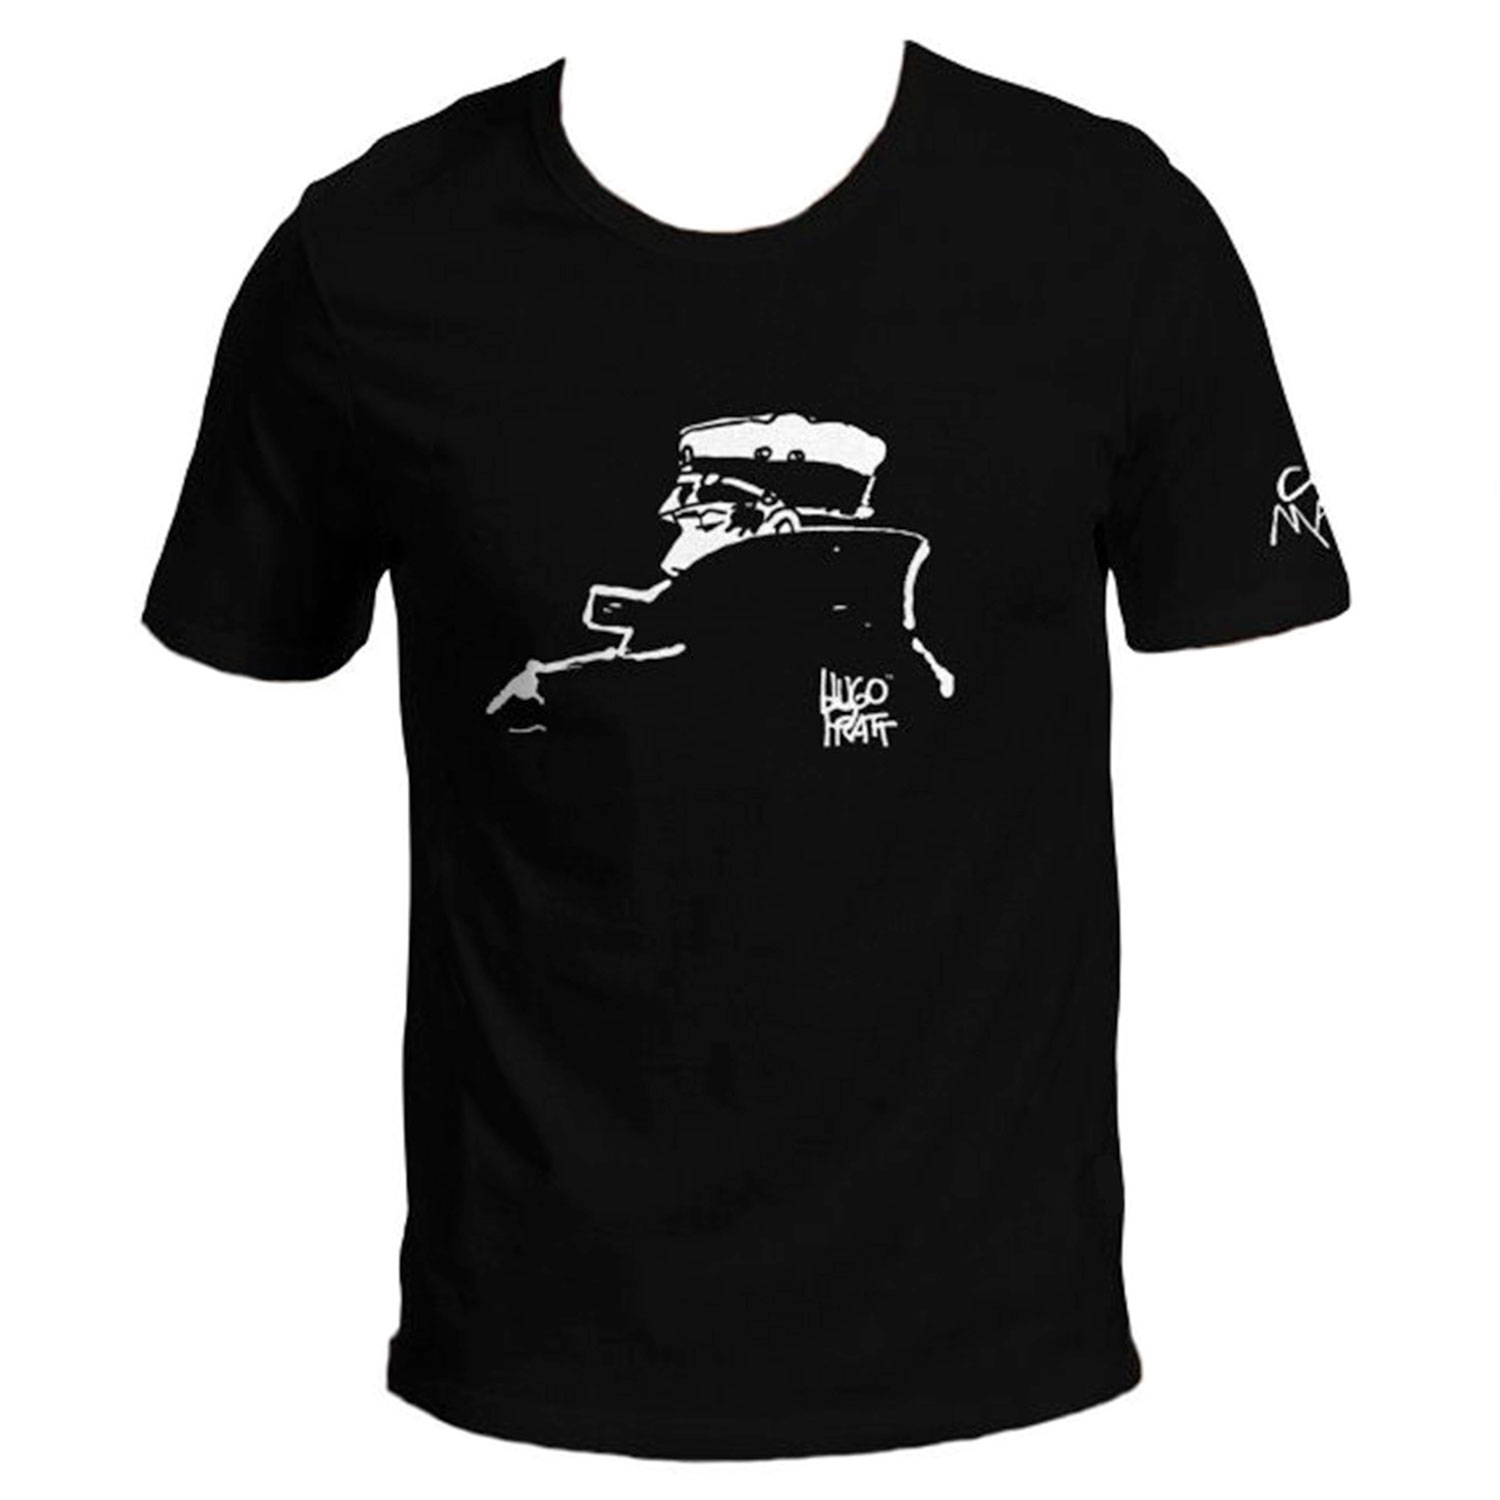 T-shirt Hugo Pratt : Corto Maltese , Notturno (nero)